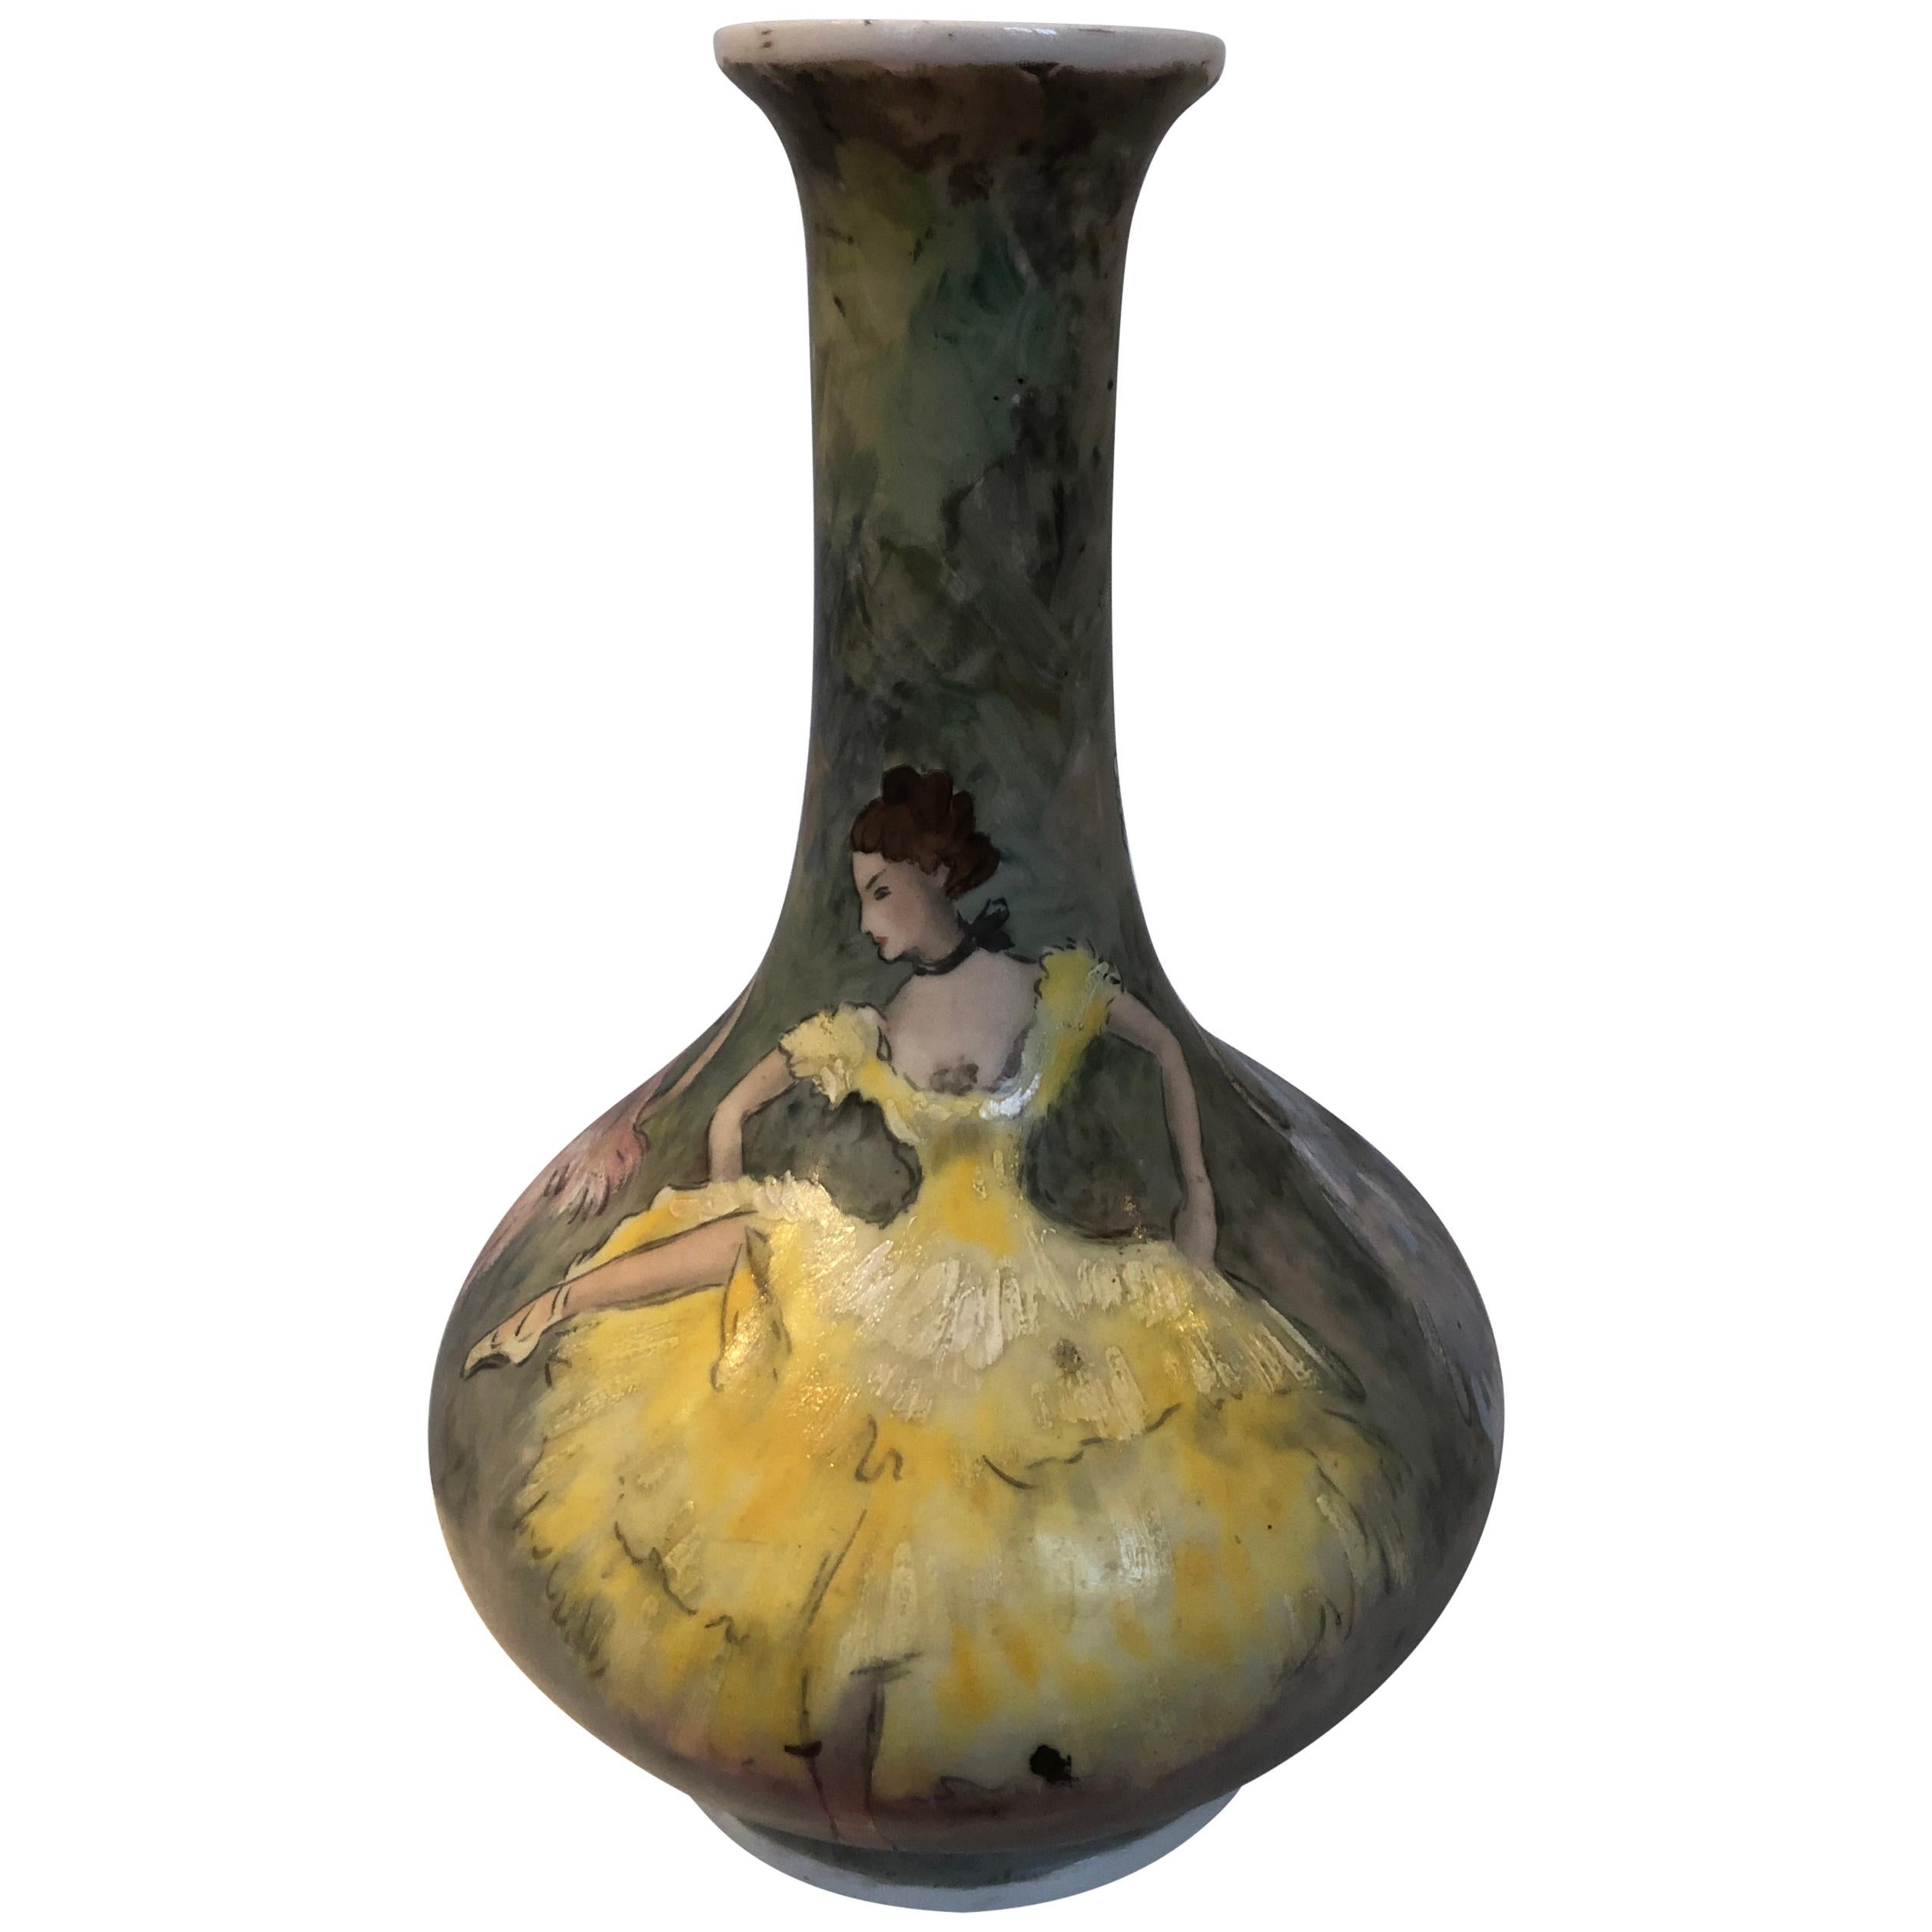 Beautiful Base Lamp
- Vase Porcelain De Paris Hand Painted French Cancan